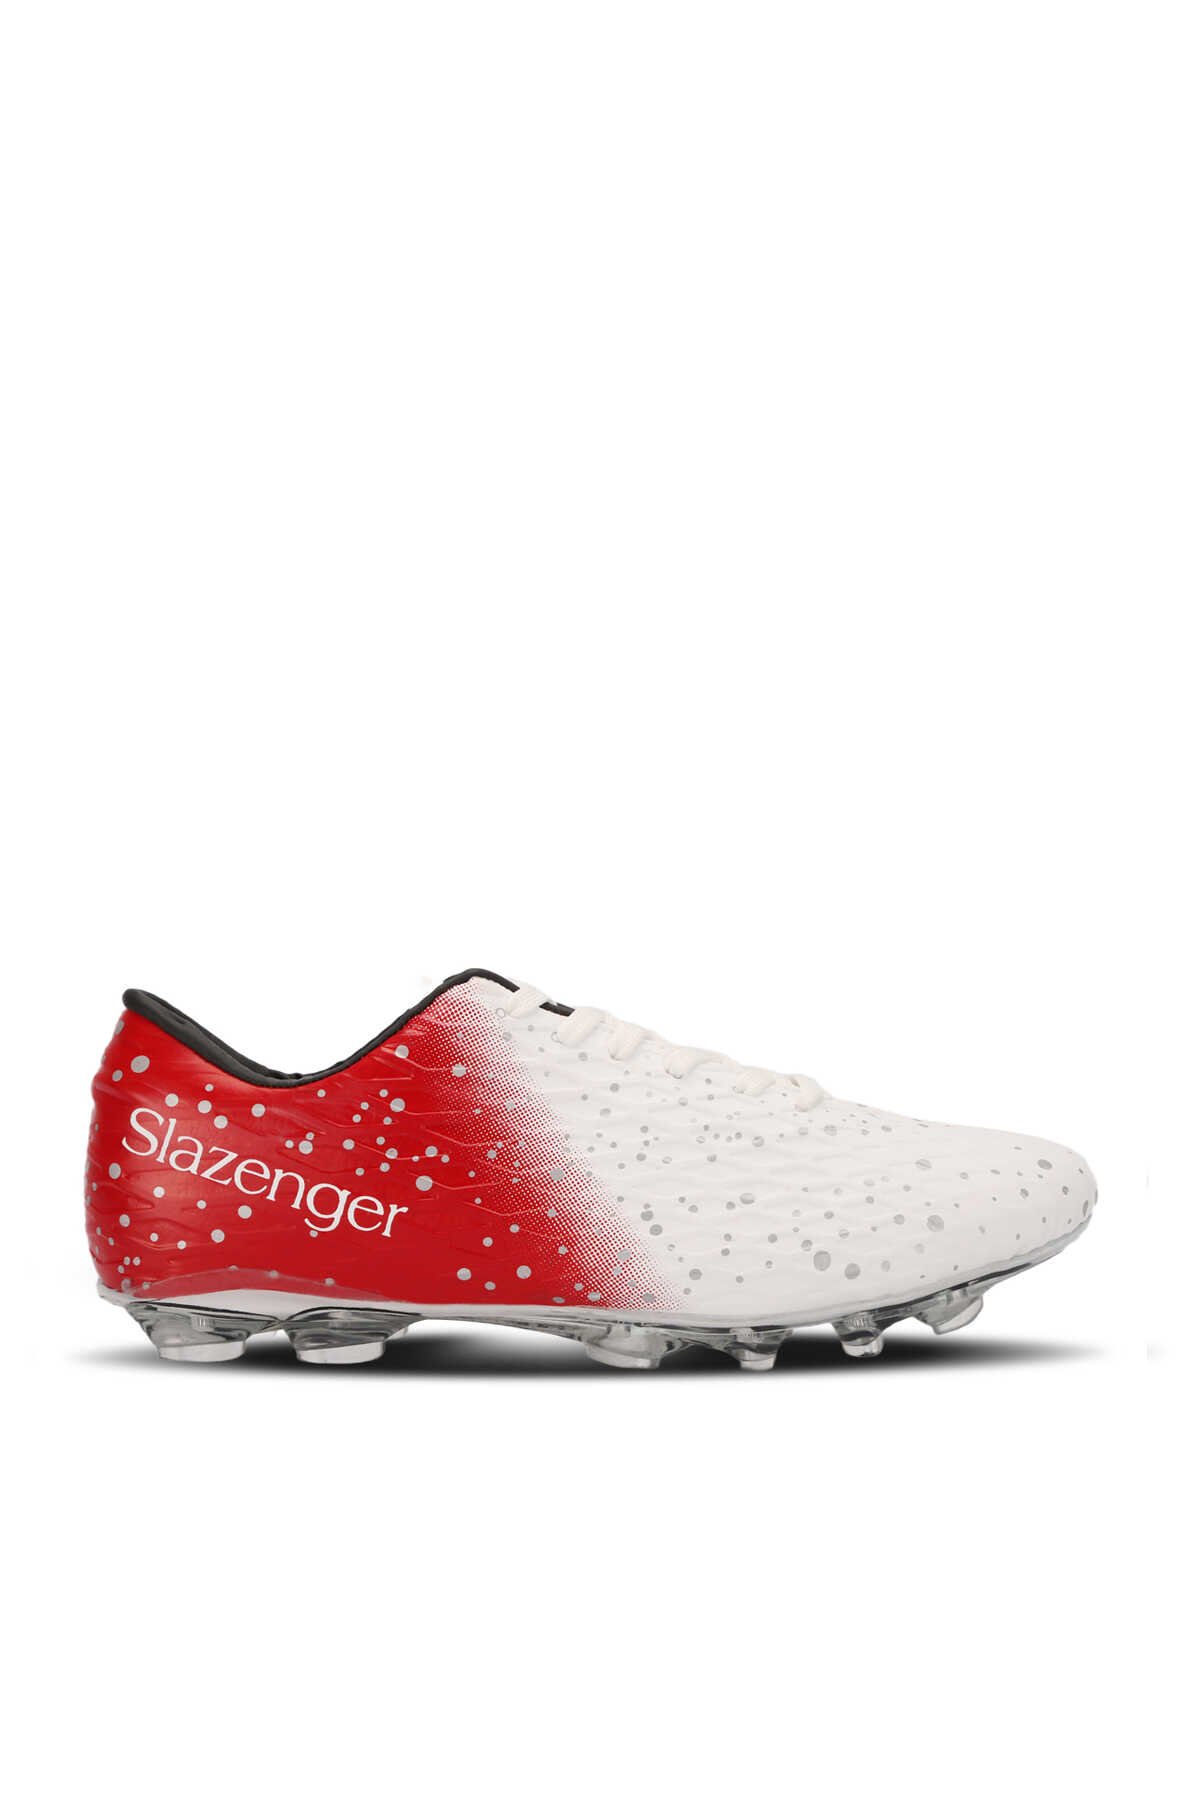 Slazenger - Slazenger HANIA KRP Futbol Erkek Çocuk Krampon Ayakkabı Beyaz / Kırmızı